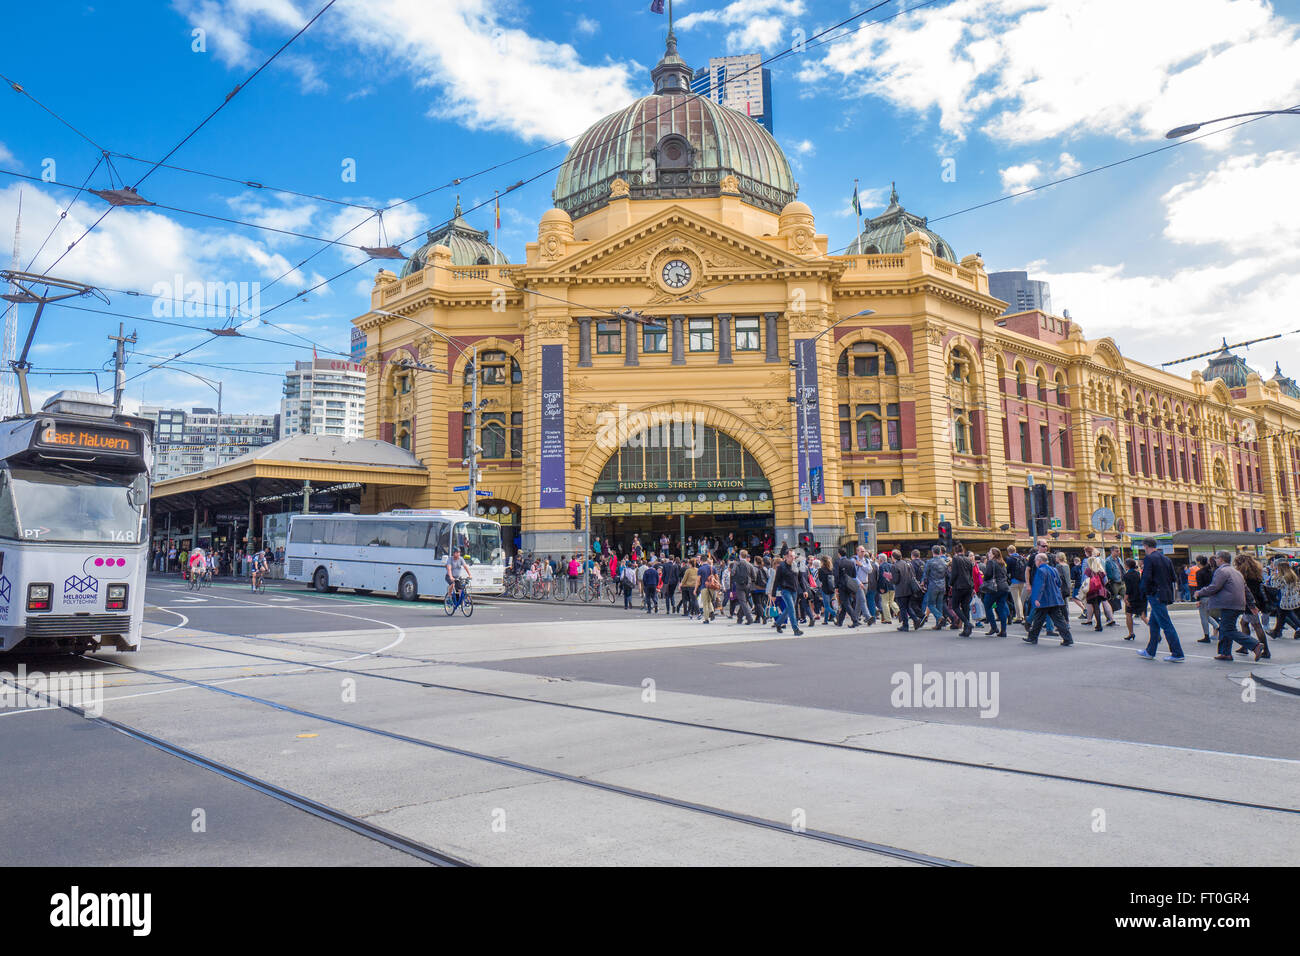 La estación de Flinders Street es un lugar famoso en Melbourne. Foto de stock